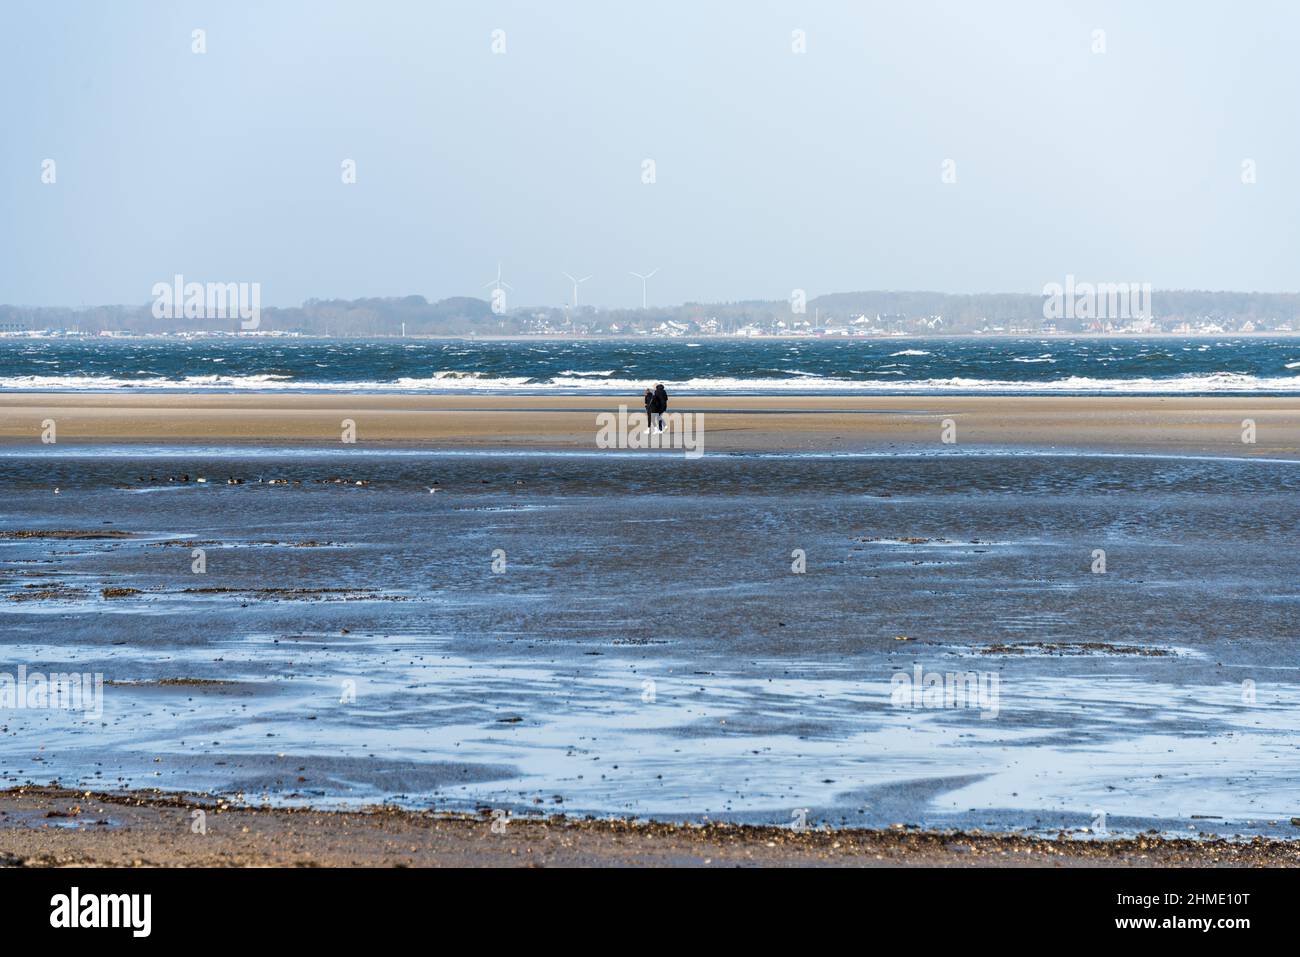 Wintersturm an der Kieler Förde, ein Weststurm Hat das Wasser aus der Kieler Förde in die Ostsee gedrückt, Spaziergänger genießen die Eindrücke. Banque D'Images